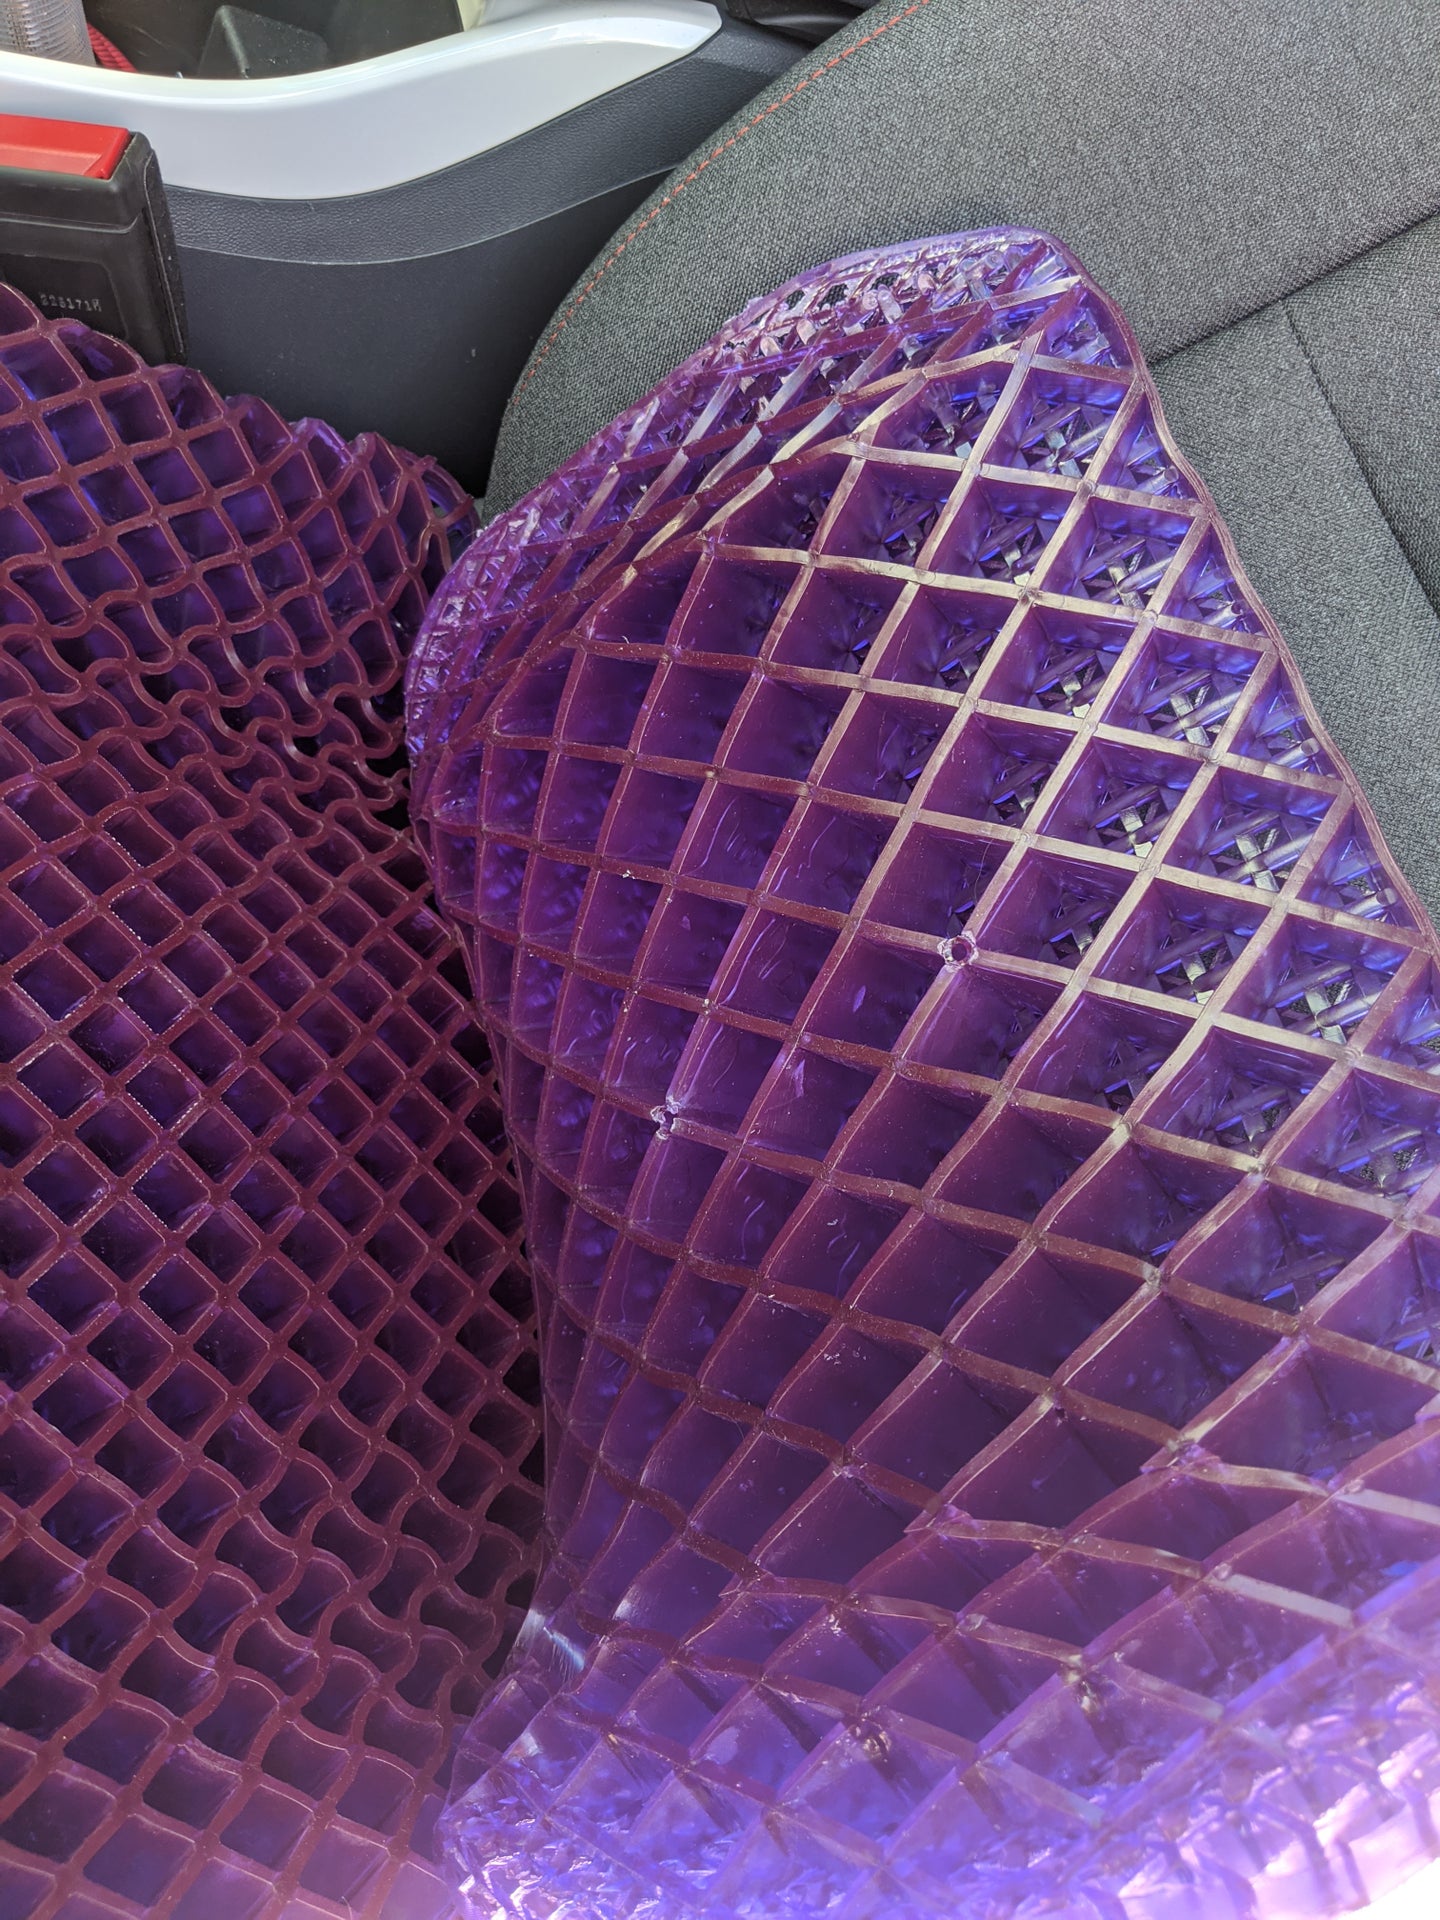 My Purple seat cushion is sooooo comfy.